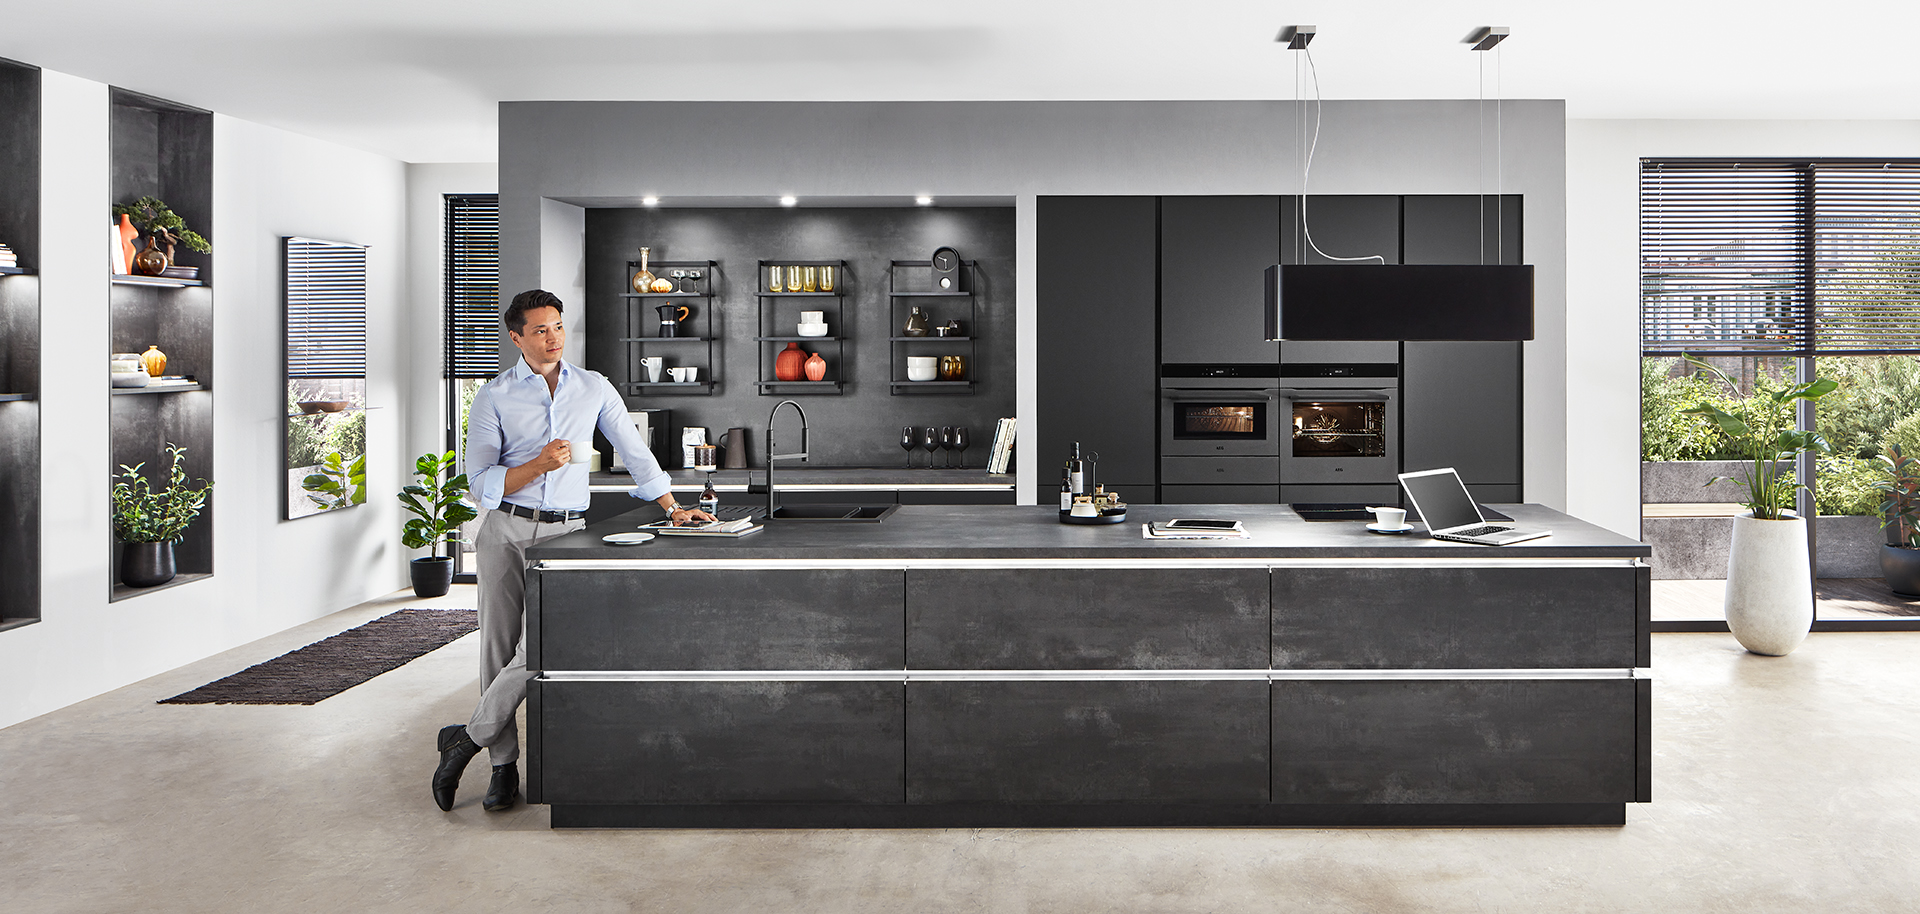 Moderne Kücheninnenräume mit einem schlanken Design mit schwarzen Schränken, eingebauten Geräten und einer Person, die Essen auf der Kücheninsel zubereitet.